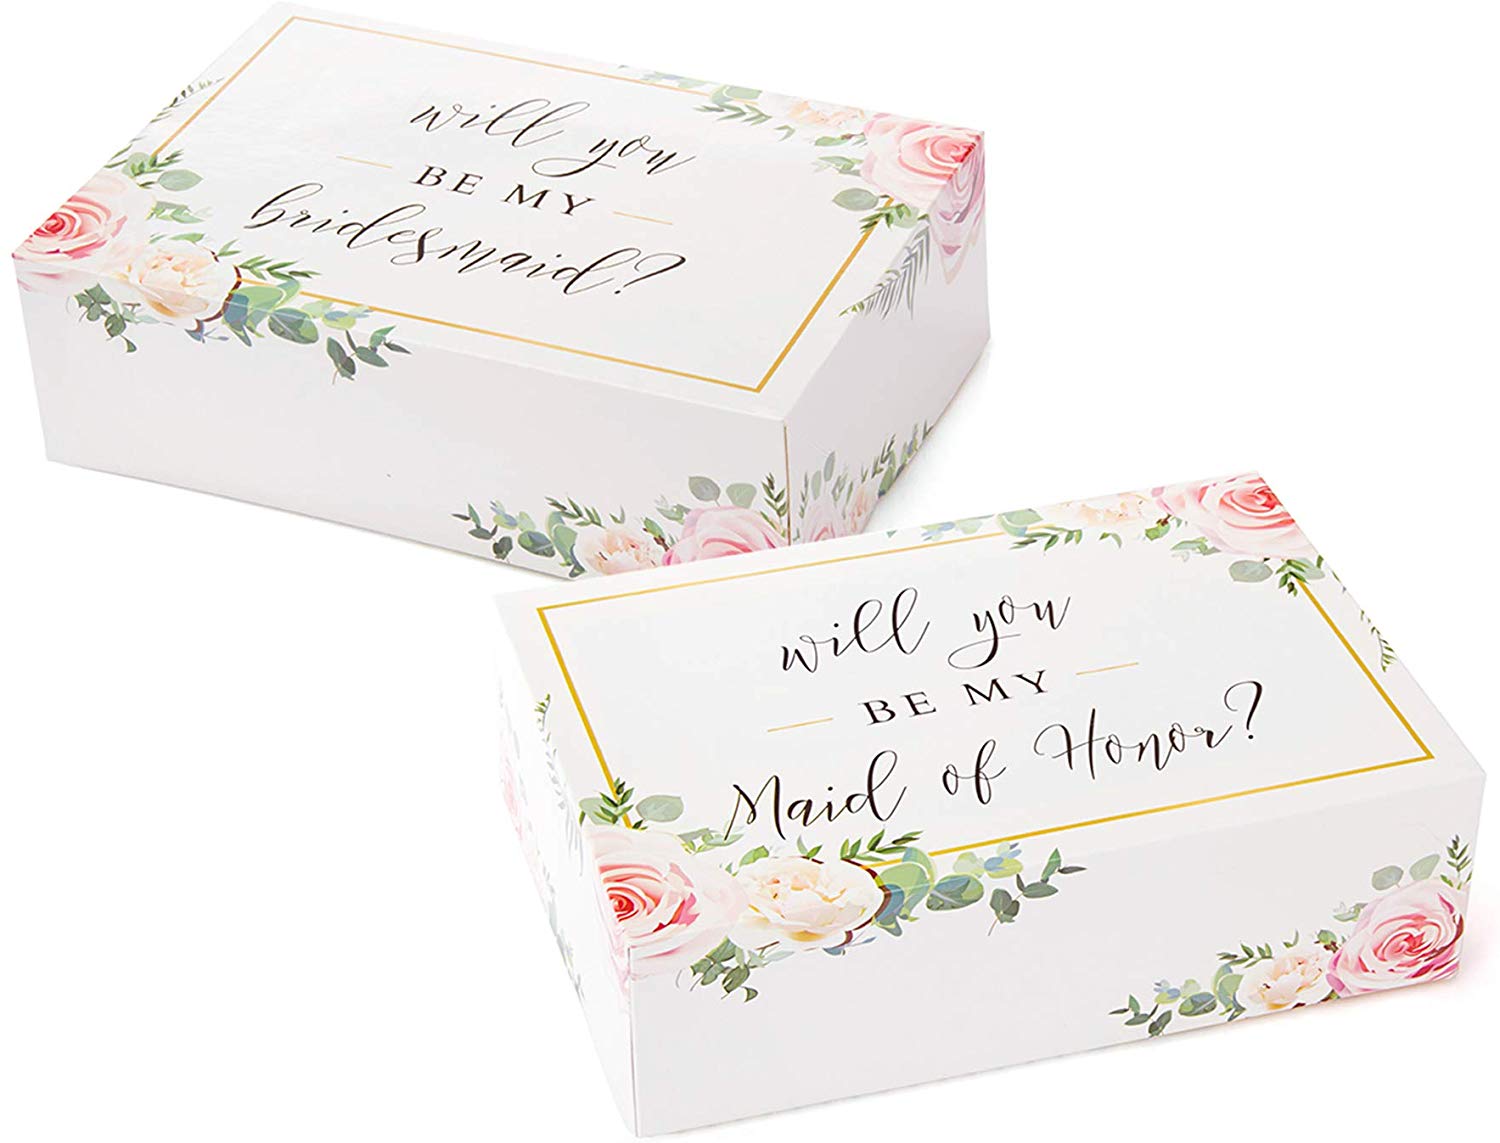 Bride's Babe Bridesmaid Gift Box Kit - Bridesmaids Proposal Gift